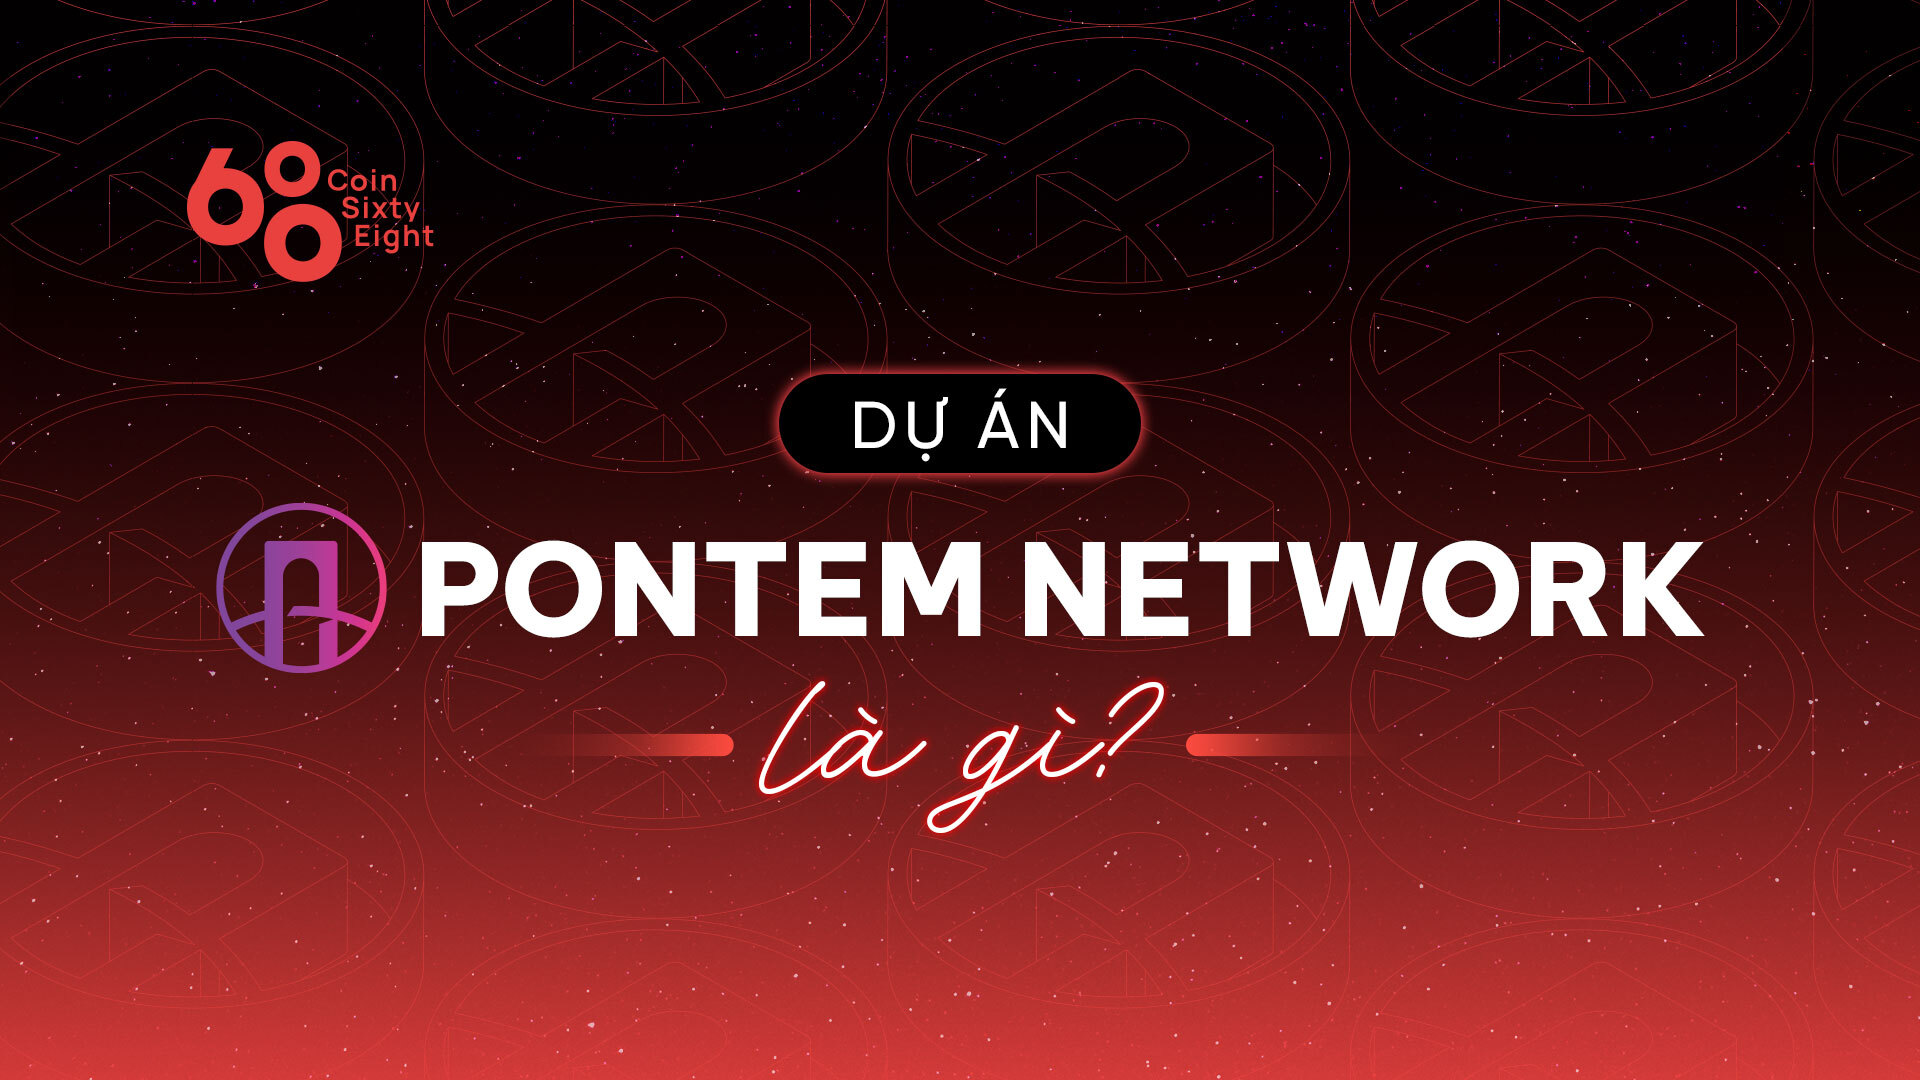 Pontem Network là gì?